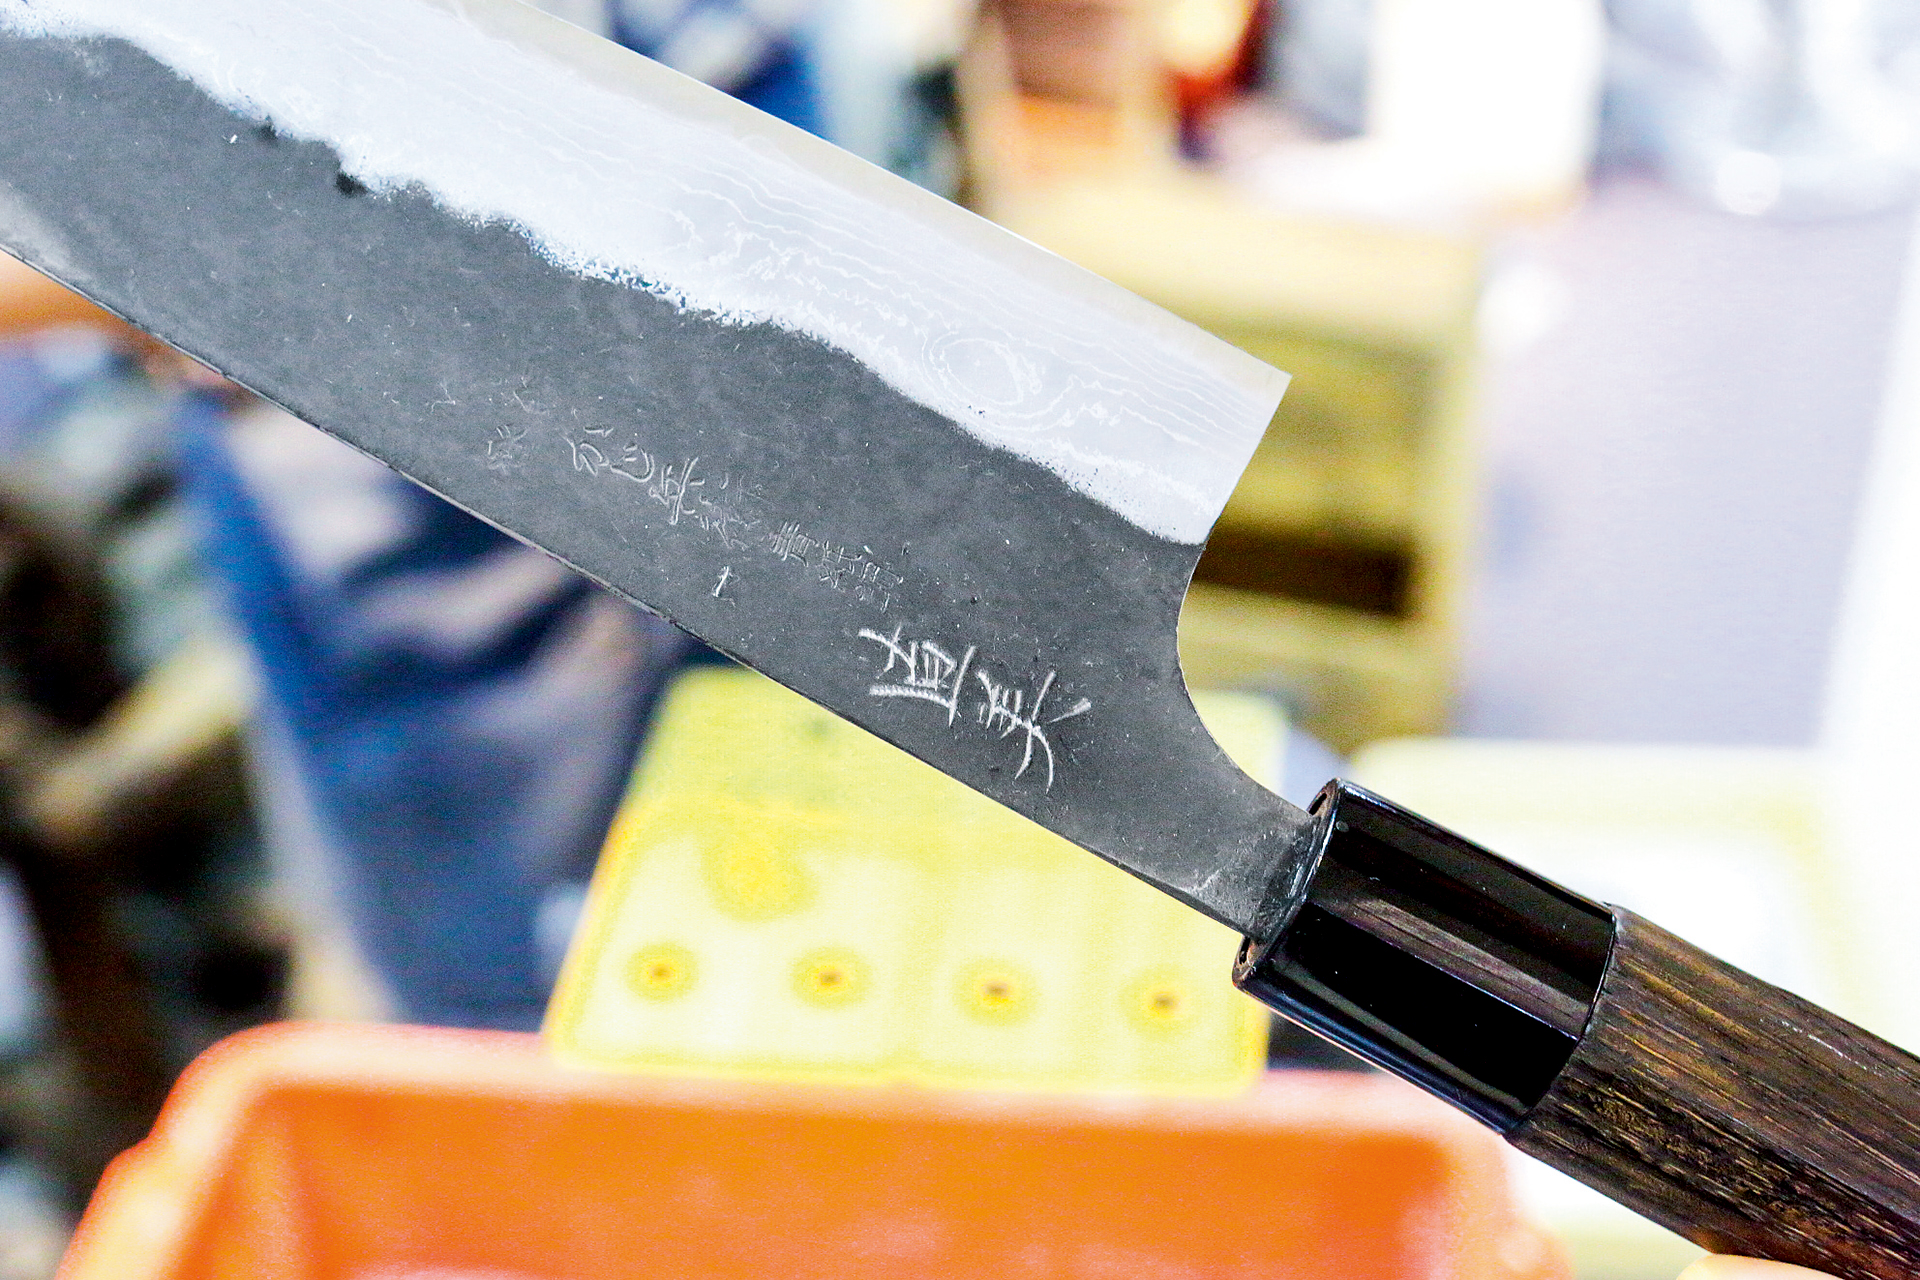 Knife Sharpening / Spoon Polishing / Name Engraving Demonstration